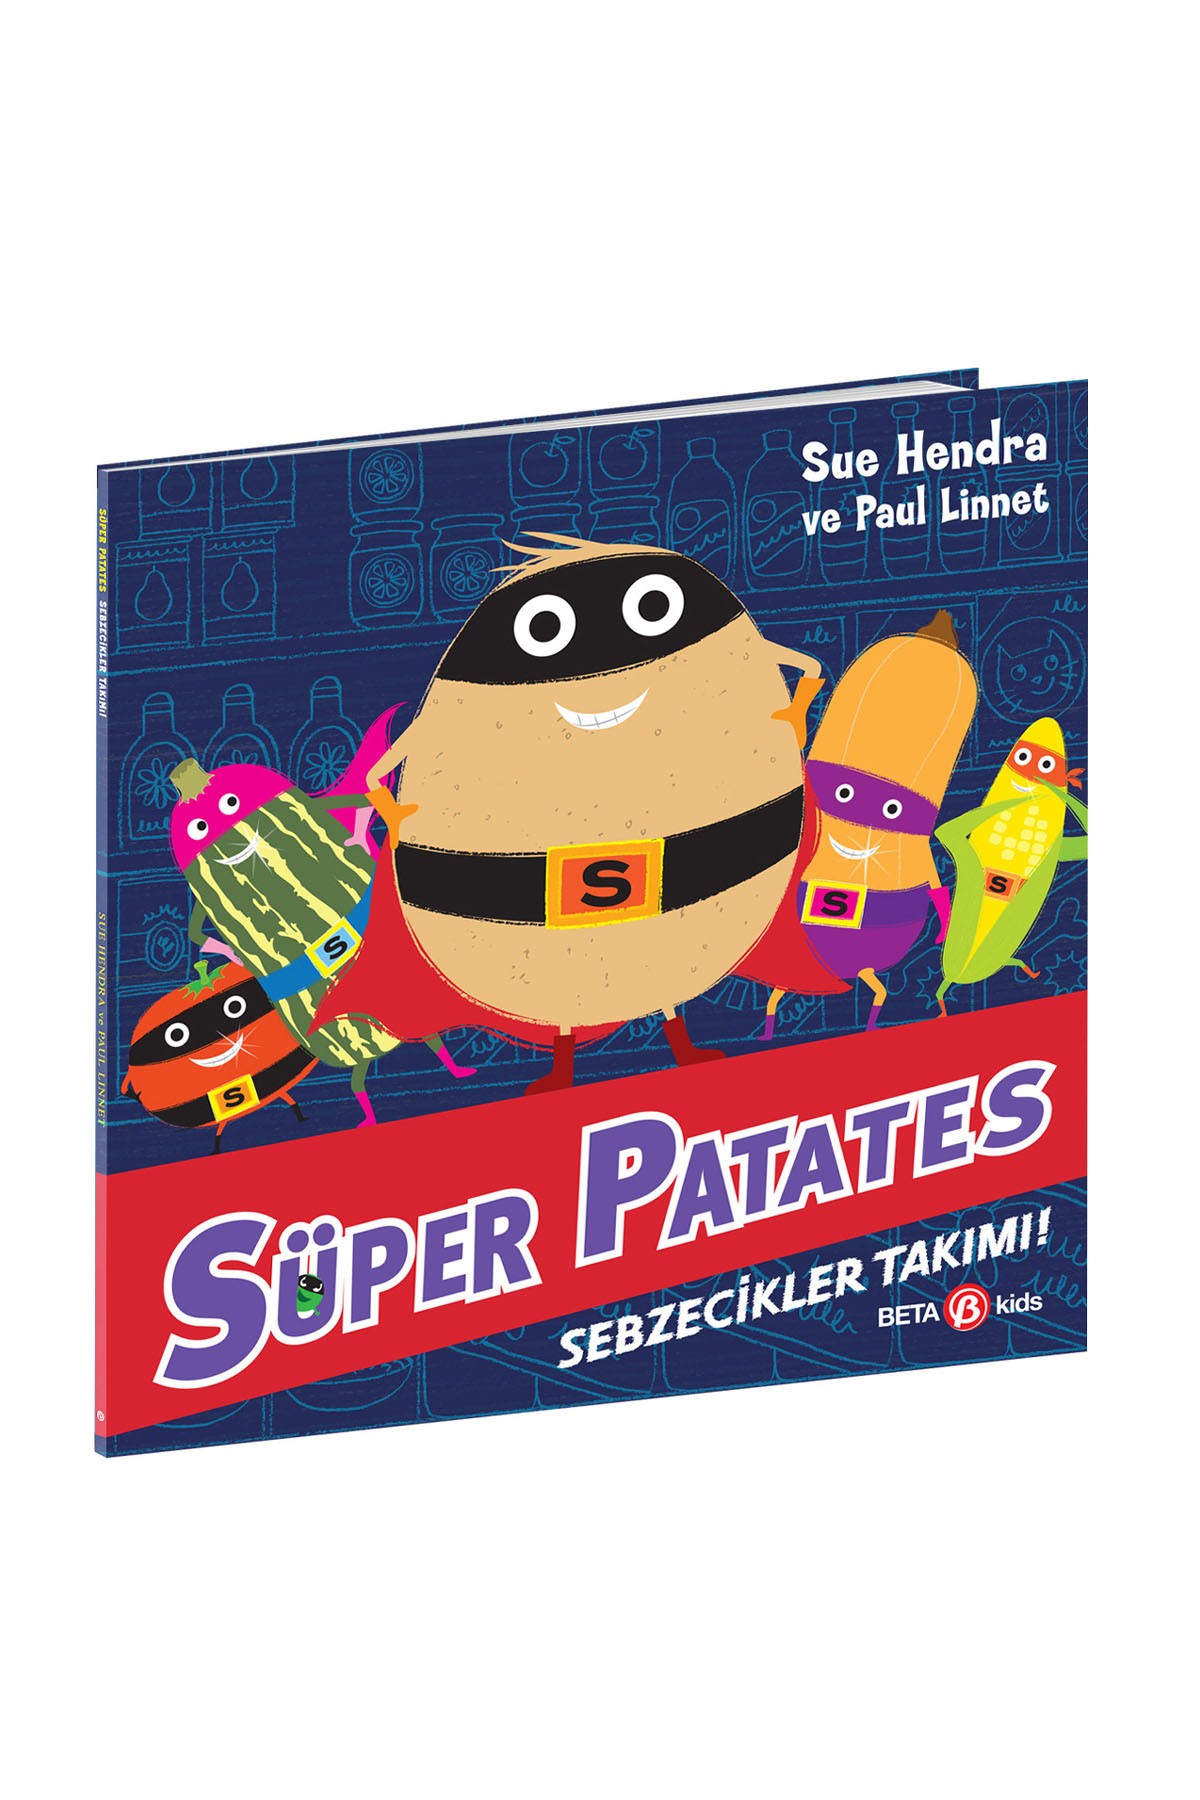 Beta Kids Süper Patates Sebzecikler Takımı!